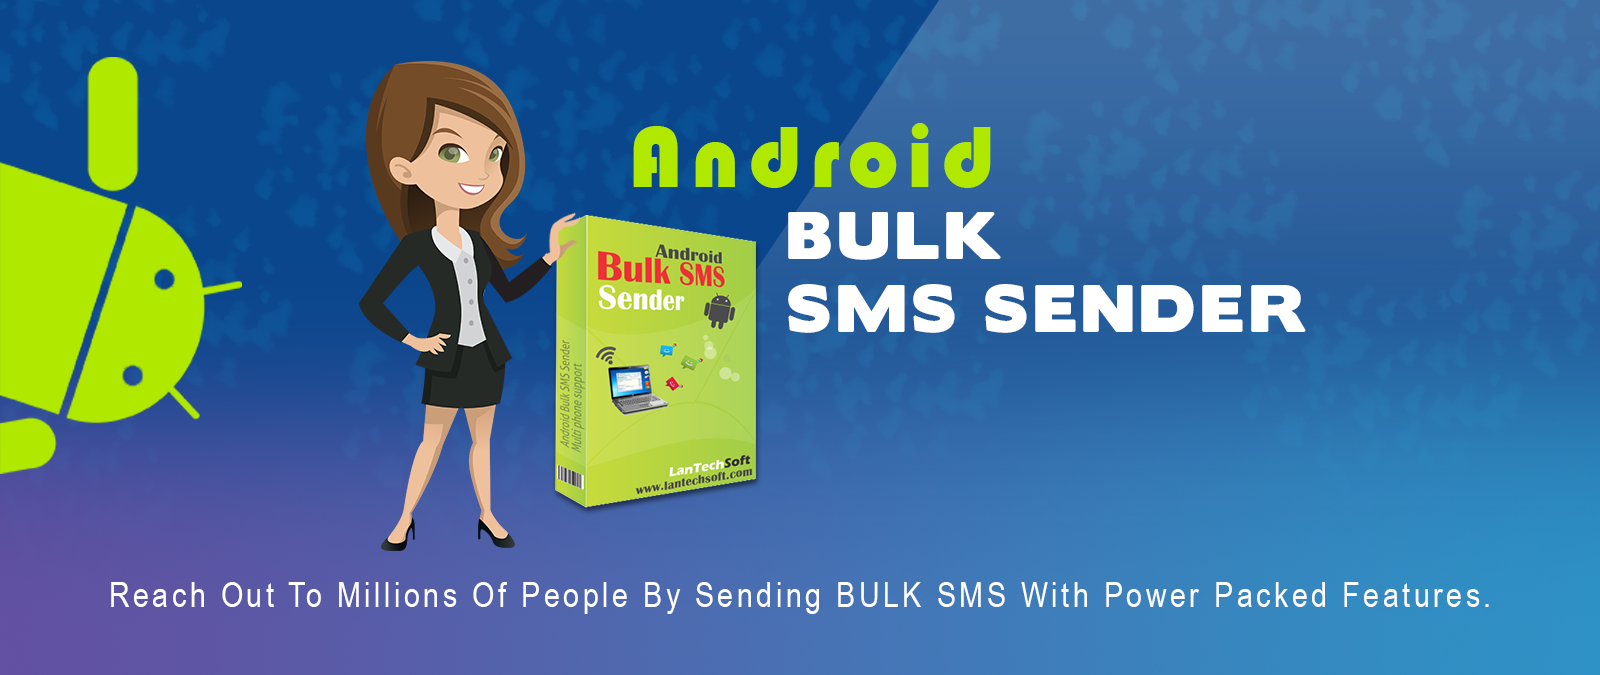 bulk sms sender software free download